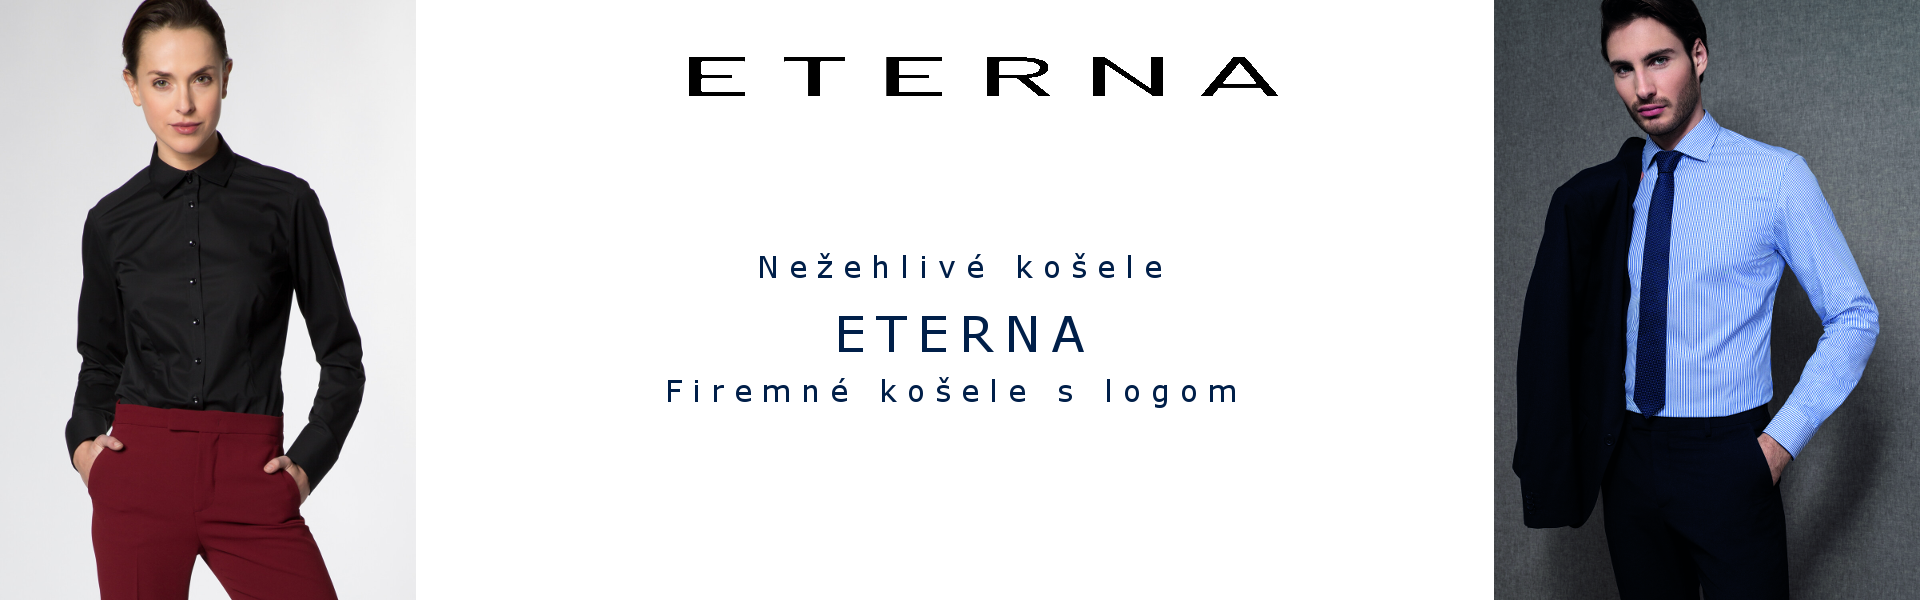 Nežehlivé košele ETERNA pre firmy s logom